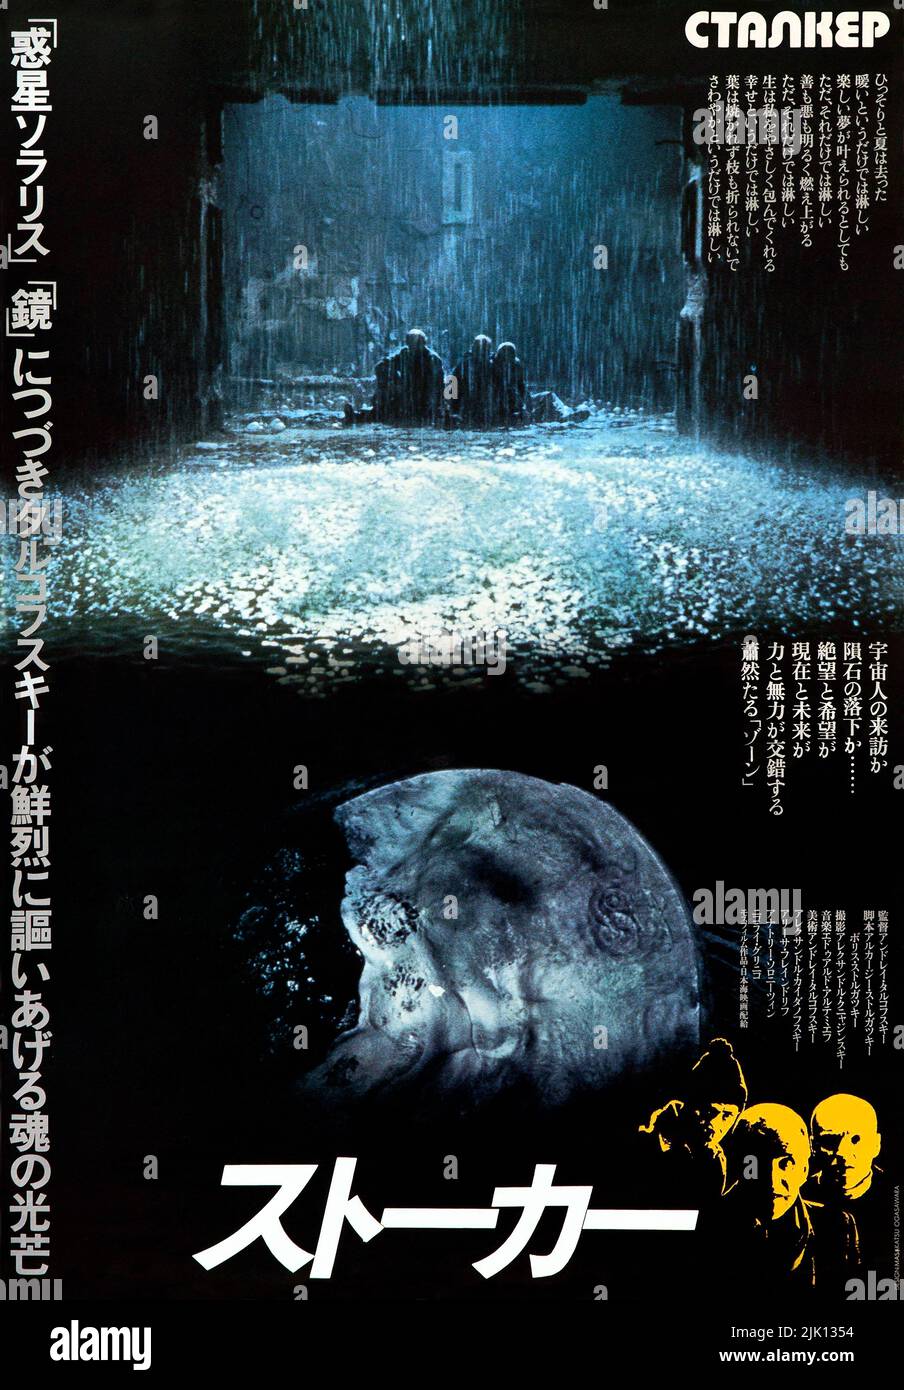 Stalker - Japanese Film Poster (Ста́лкер), 1979 film d'arte di fantascienza sovietica diretto da Andrei Tarkovsky scritto da Arkady e Boris Strugatsky Foto Stock